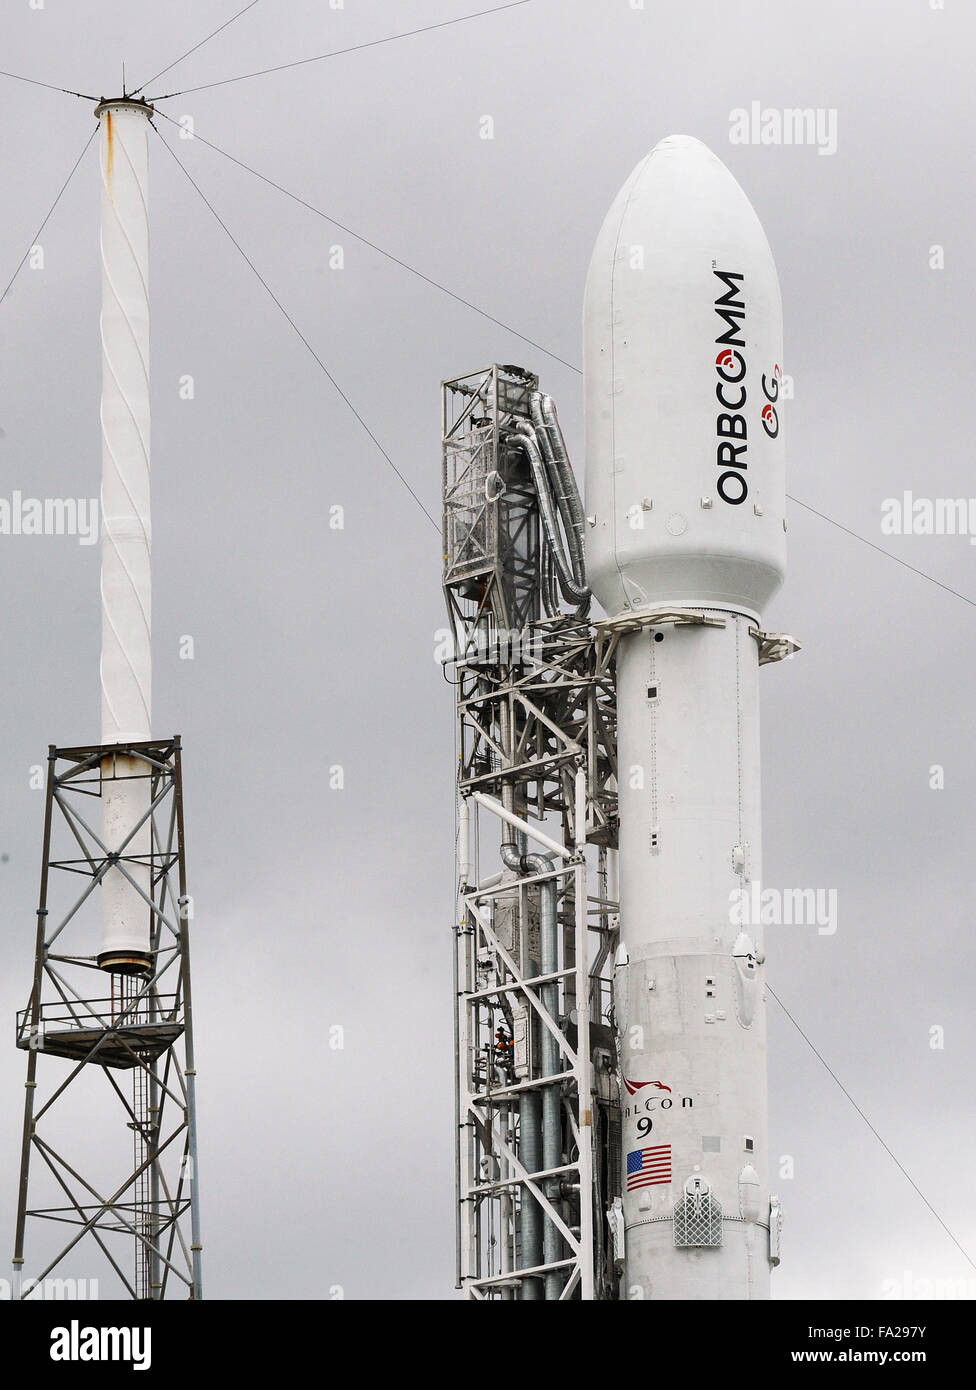 Cabo Cañaveral, Florida, Estados Unidos. 20 diciembre, 2015. La carga útil del satélite de un actualizado SpaceX Falcon 9 cohete es visto en la Estación Cañaveral de la Fuerza Aérea, donde se espera un lanzamiento esta noche a las 8:29 p.m. El cohete tendrá lugar el 11 de comunicaciones Orbcomm satélites en órbita. SpaceX intentará también, por primera vez, a la tierra de la primera etapa del cohete de vuelta en tierra. Este es el primer vuelo de un Falcon 9 desde un cohete explotó en Junio de 2015, aproximadamente dos minutos después de su lanzamiento en una misión de reabastecimiento de la Estación Espacial Internacional. Crédito: Paul Hennessy/Alamy Live News Foto de stock